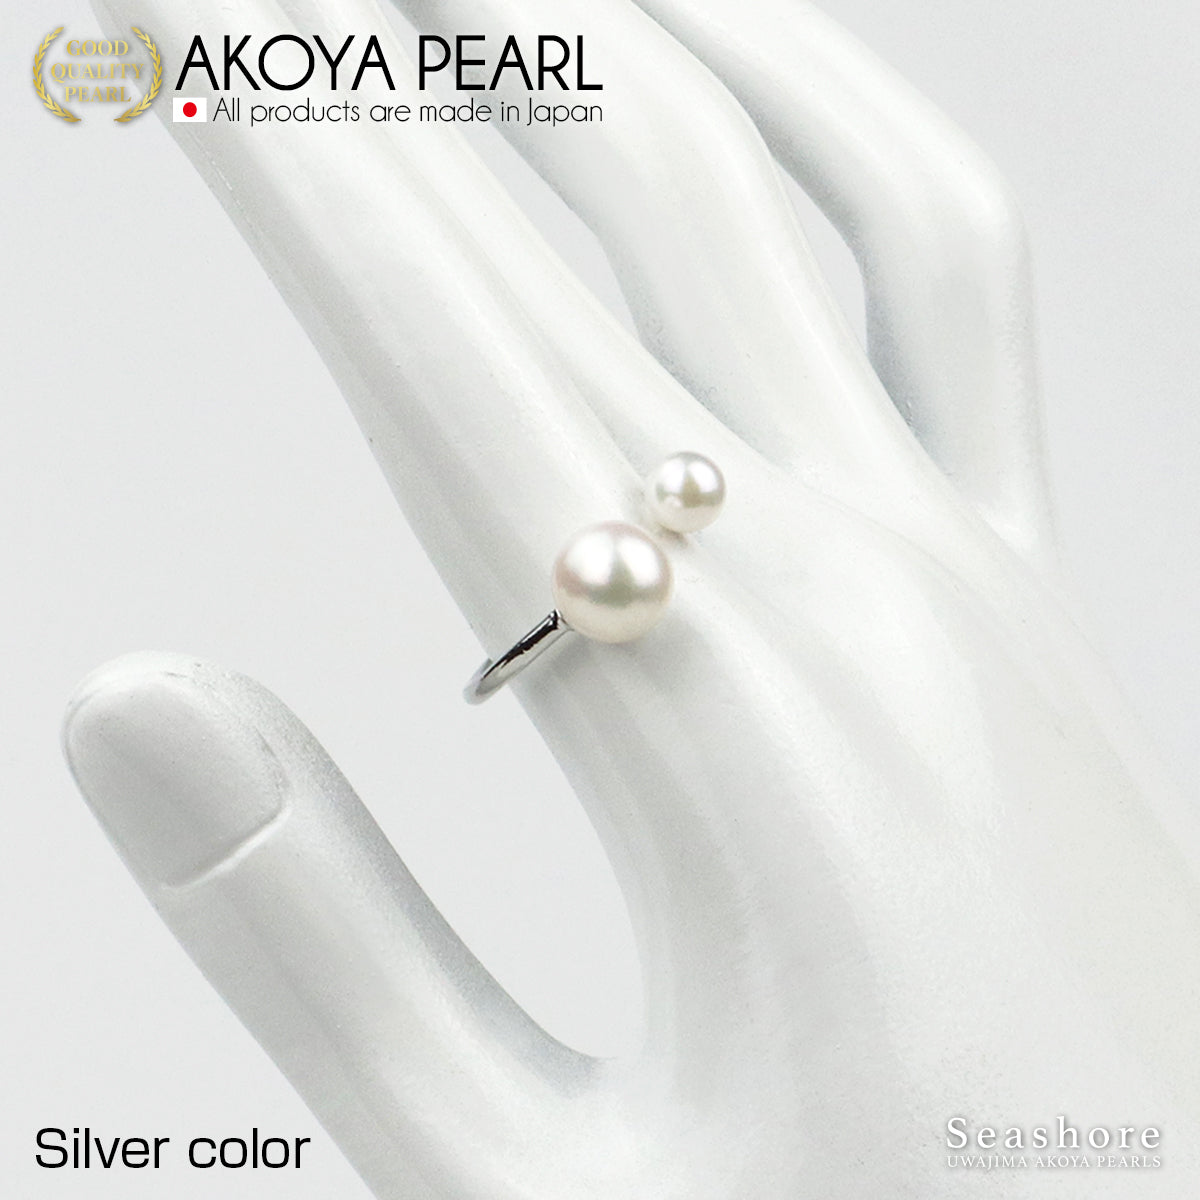 2 珠珍珠戒指 3 色黄铜铑/粉红金/金色 5.0-8.5 毫米 Akoya 珍珠民间戒指均码